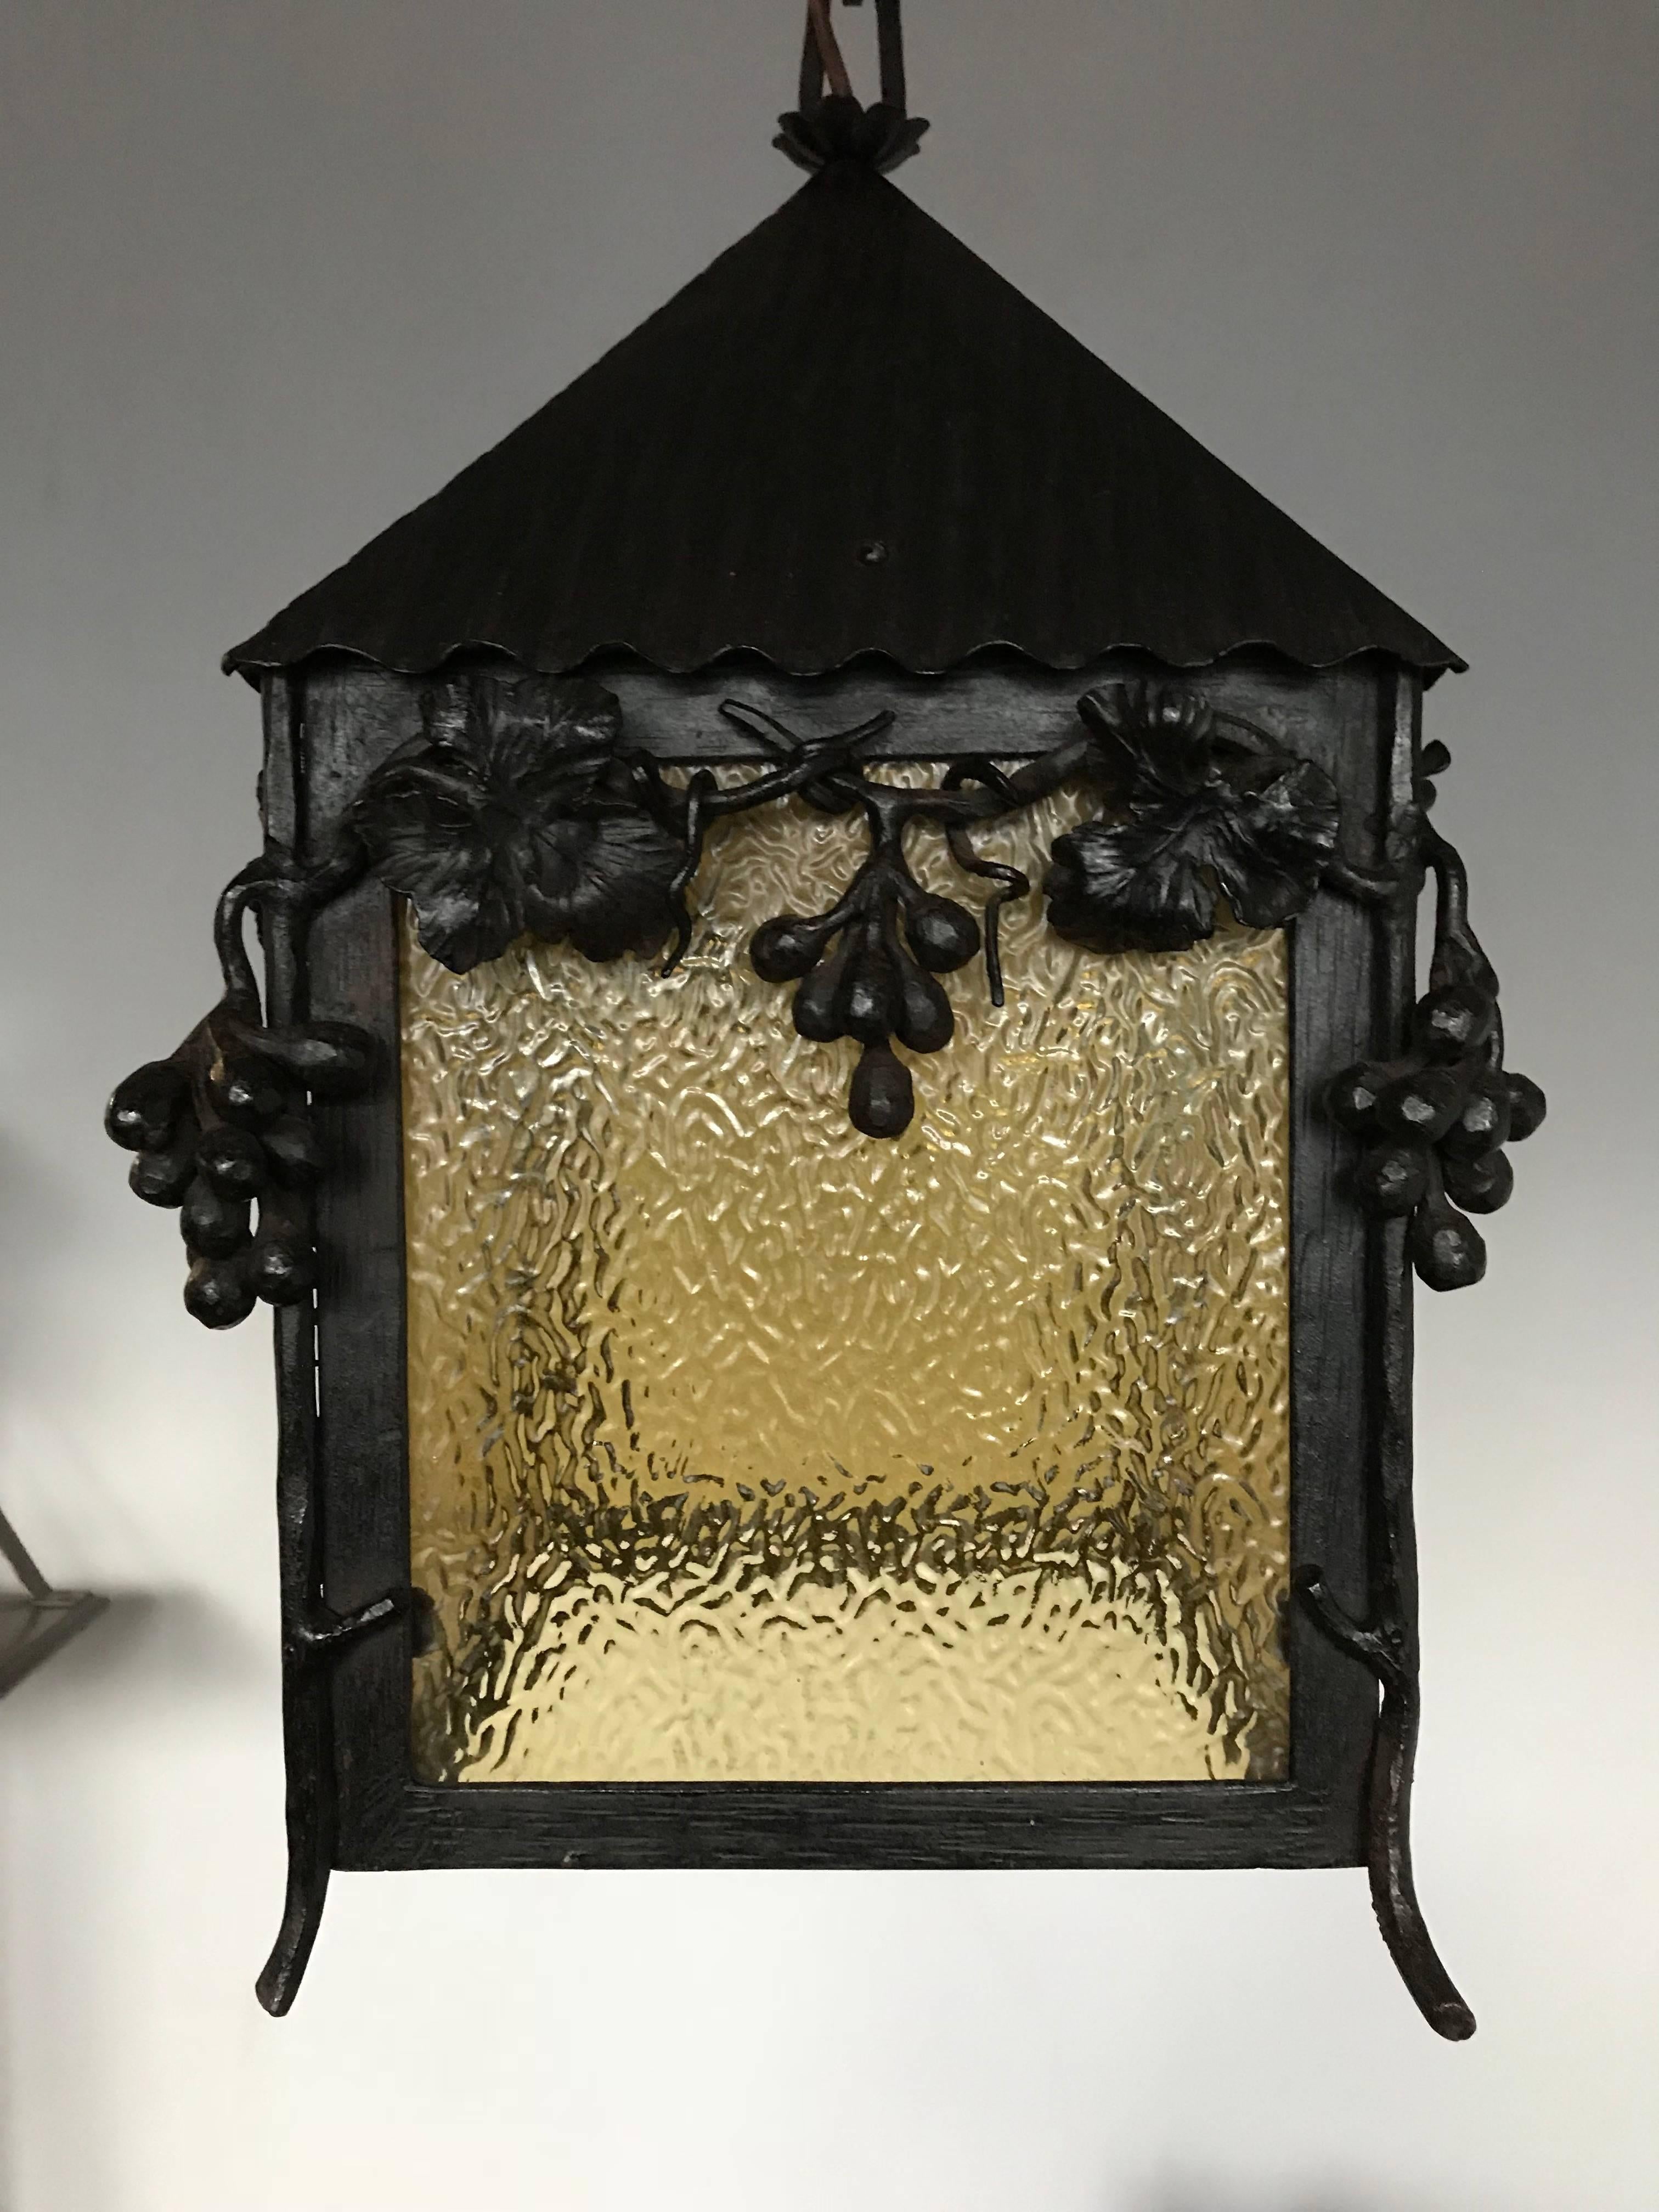 Hand-Crafted Unique Art Nouveau Wrougt Iron Pendant Light Porch Lantern by Alberic Plettinck